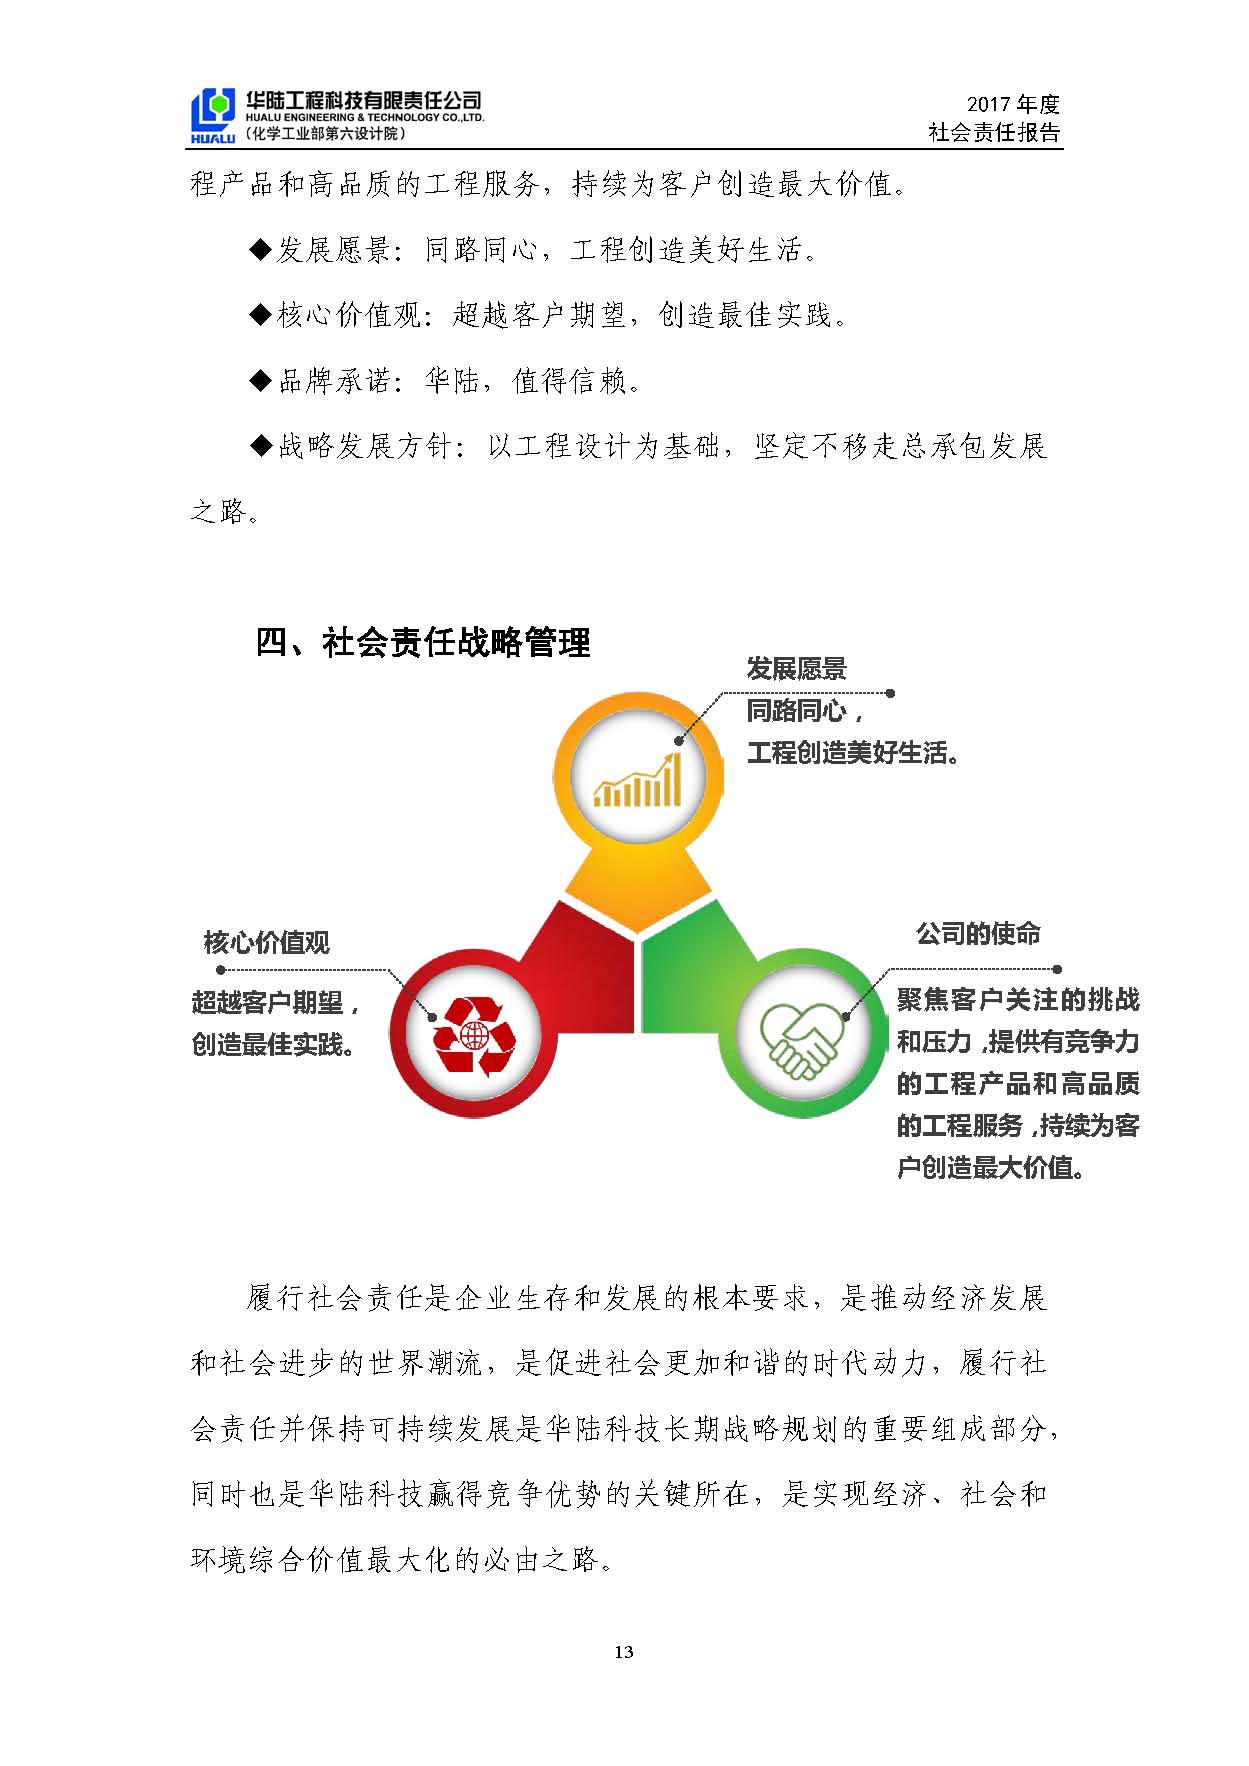 华陆工程科技有限责任公司2017年社会责任报告_页面_14.jpg